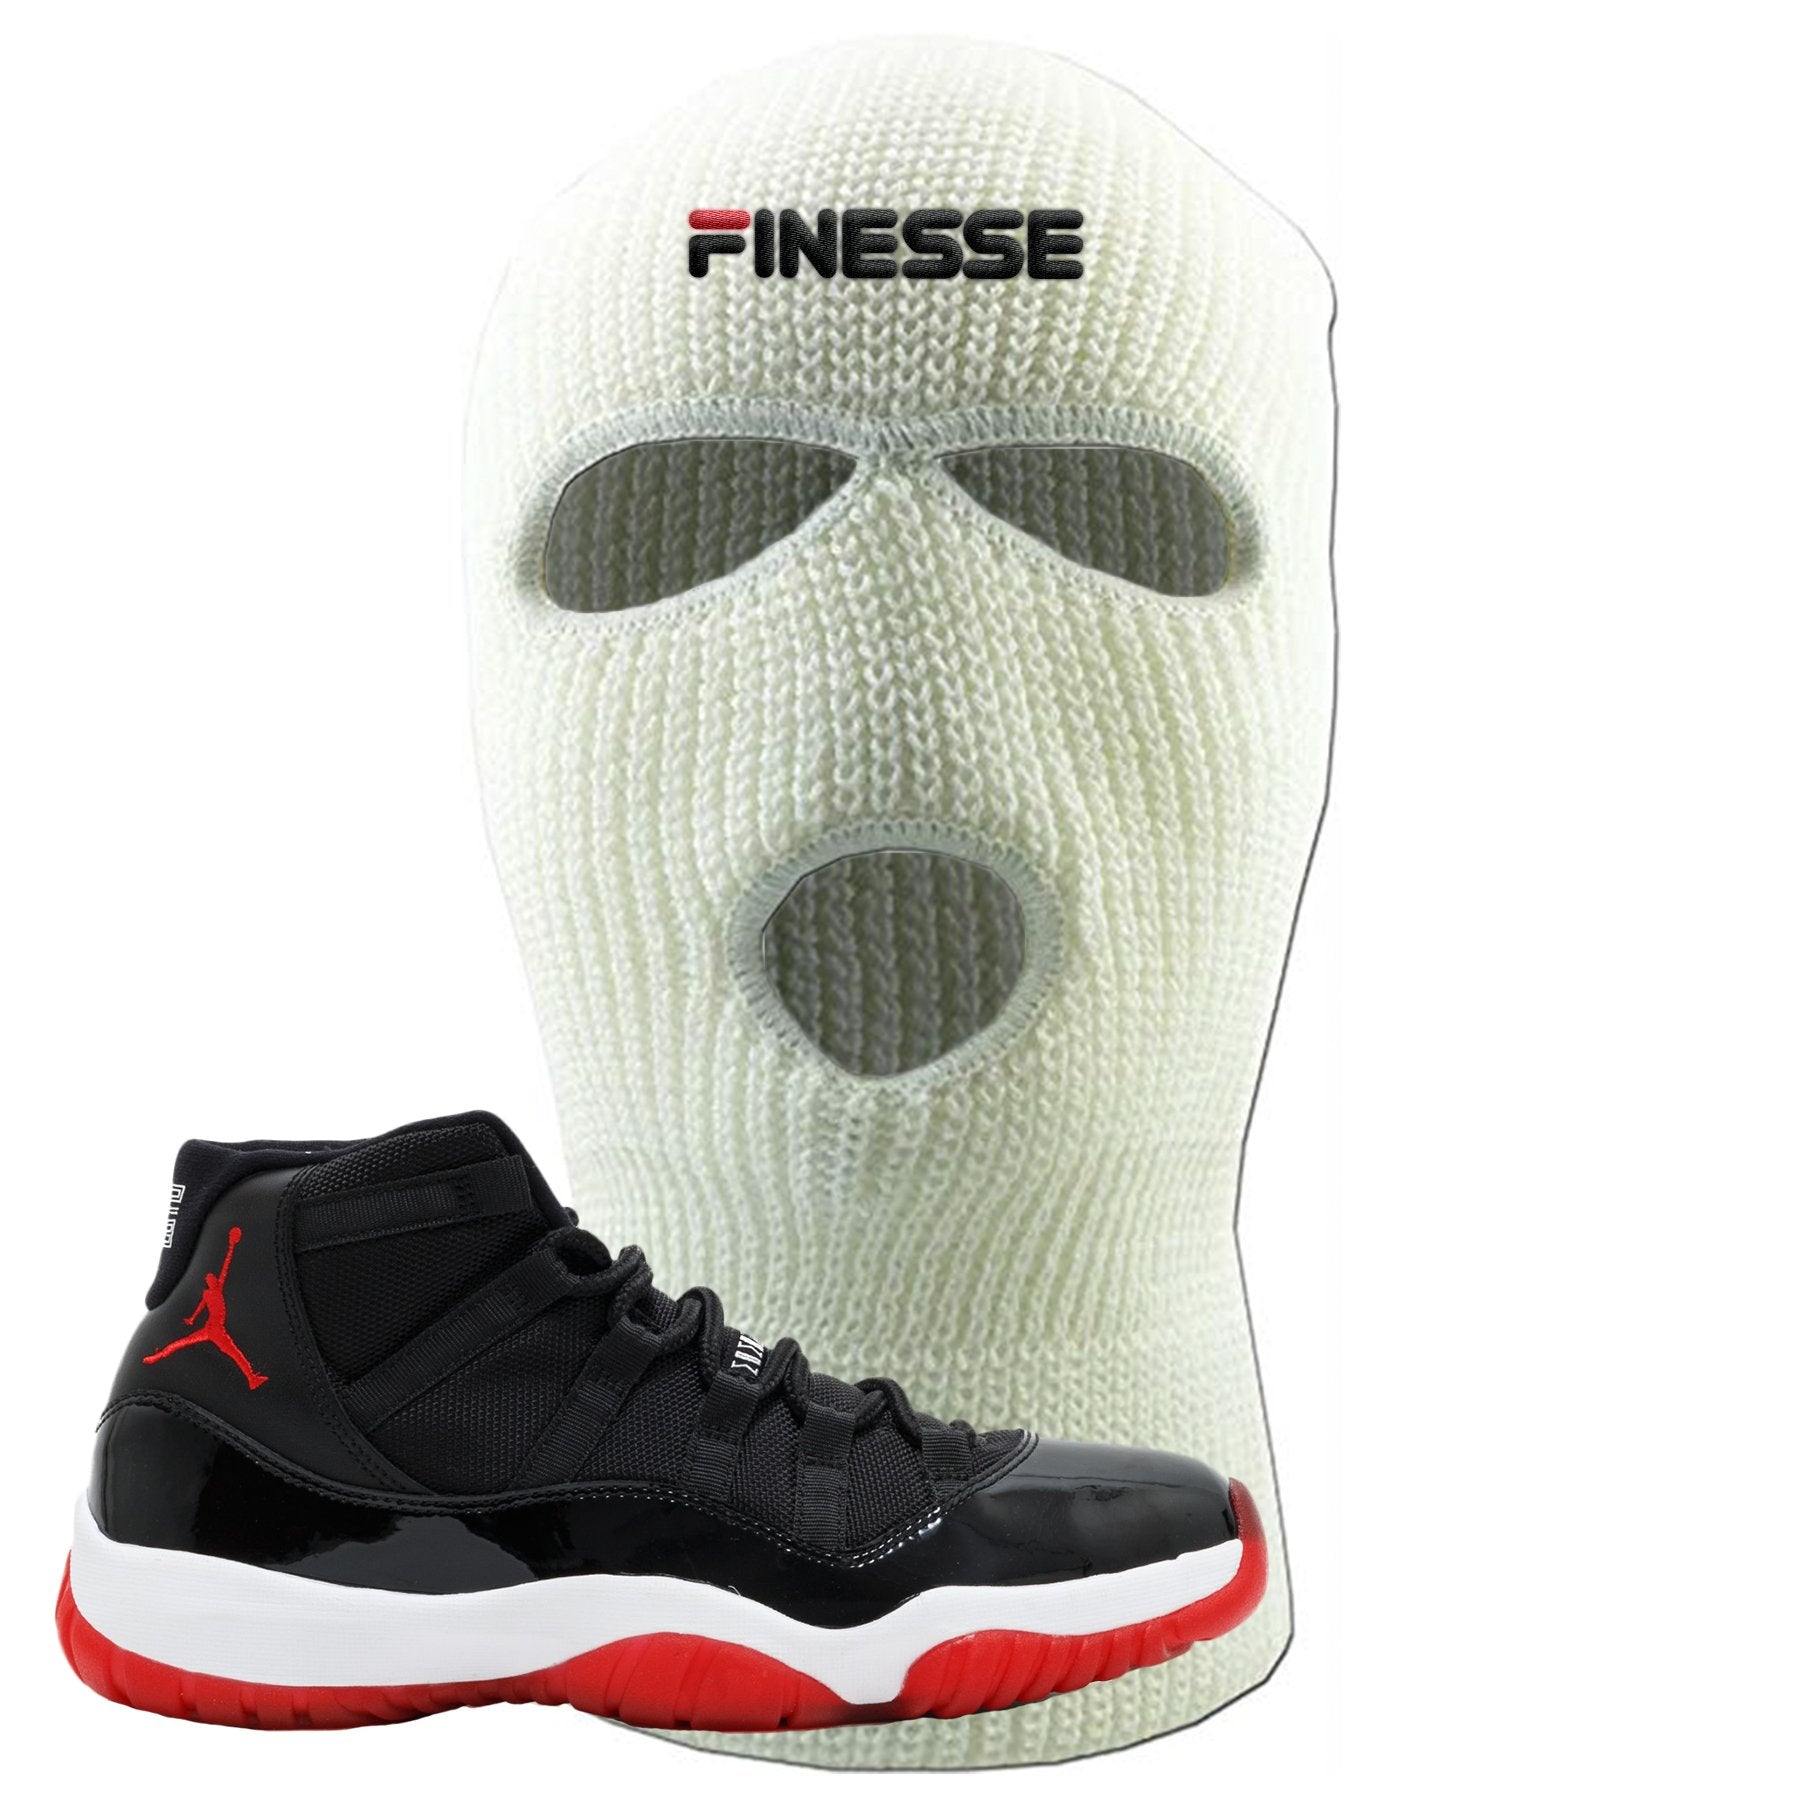 Jordan 11 Bred Finesse White Sneaker Hook Up Ski Mask